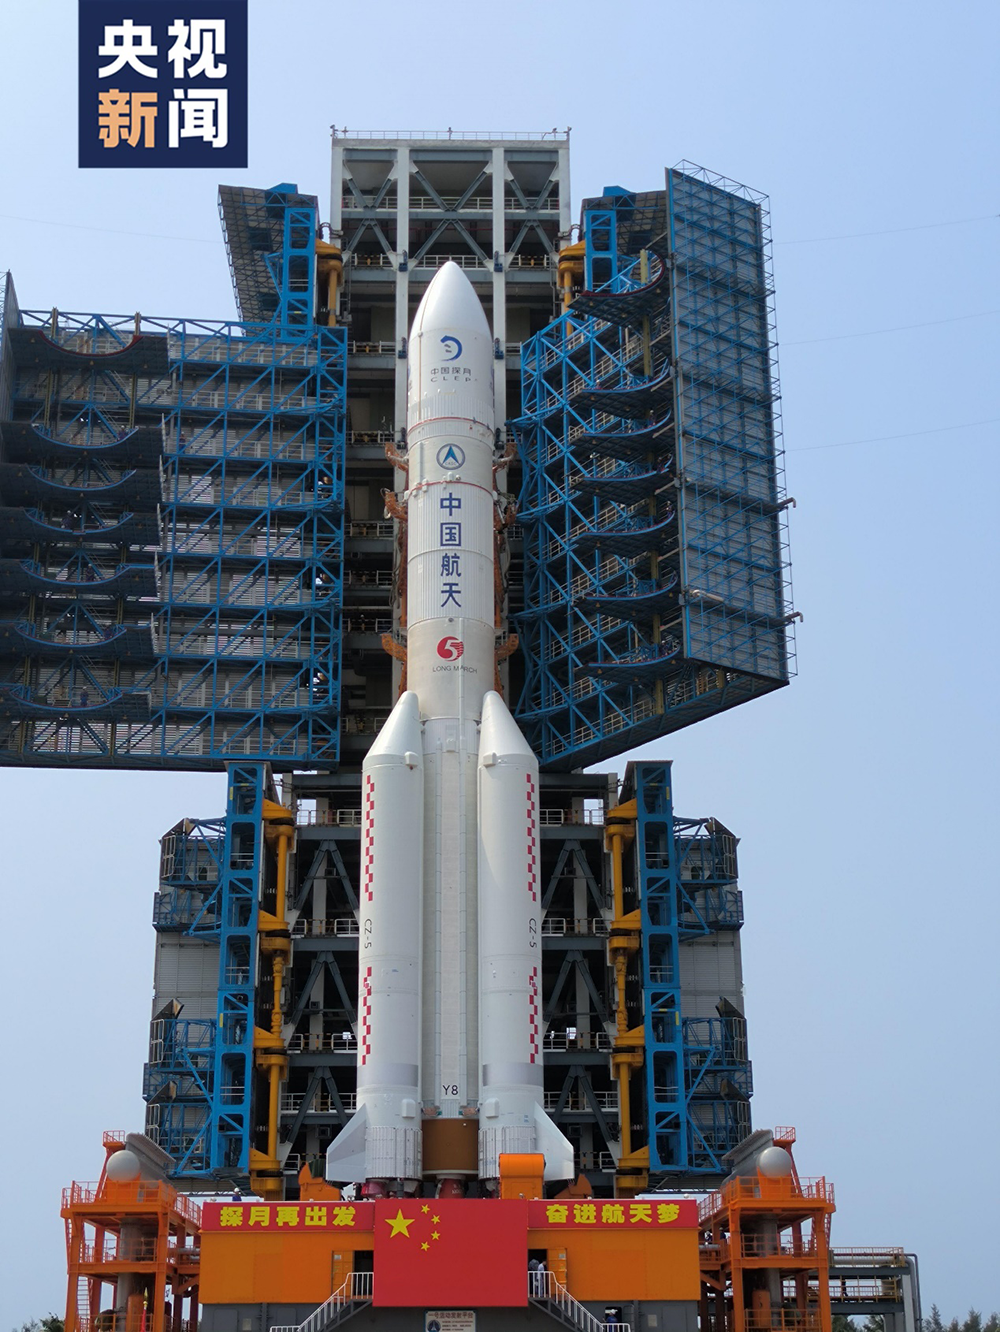 搭载嫦娥六号的长征五号遥八运载火箭,该火箭由中国航天科技集团有限